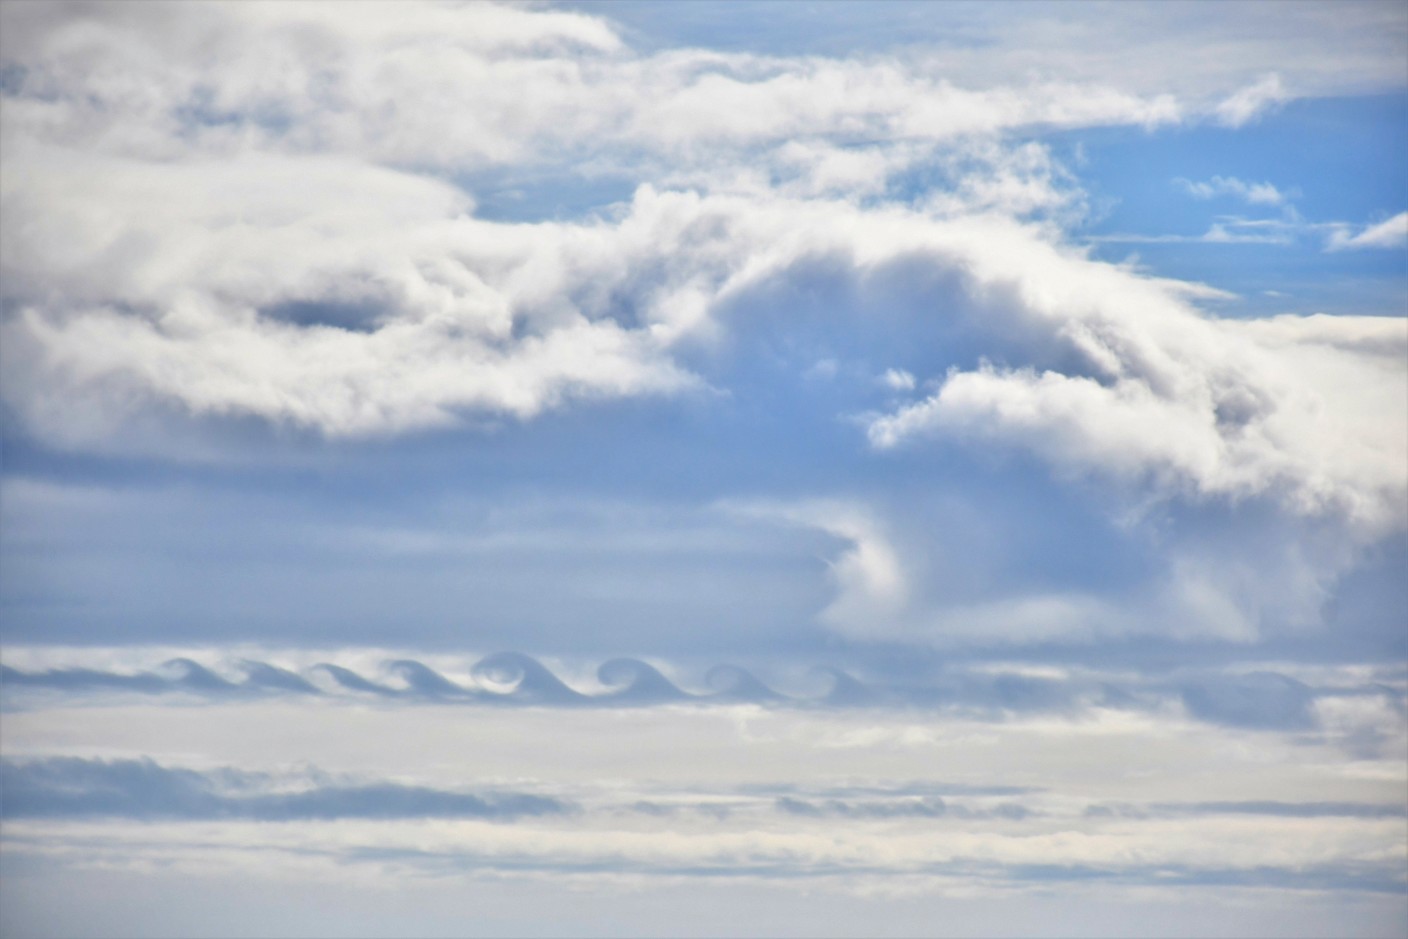 Foto gemaakt door Sytse Schoustra - Terschelling - De Kelvin-Helmholtz wolken boven Terschelling.